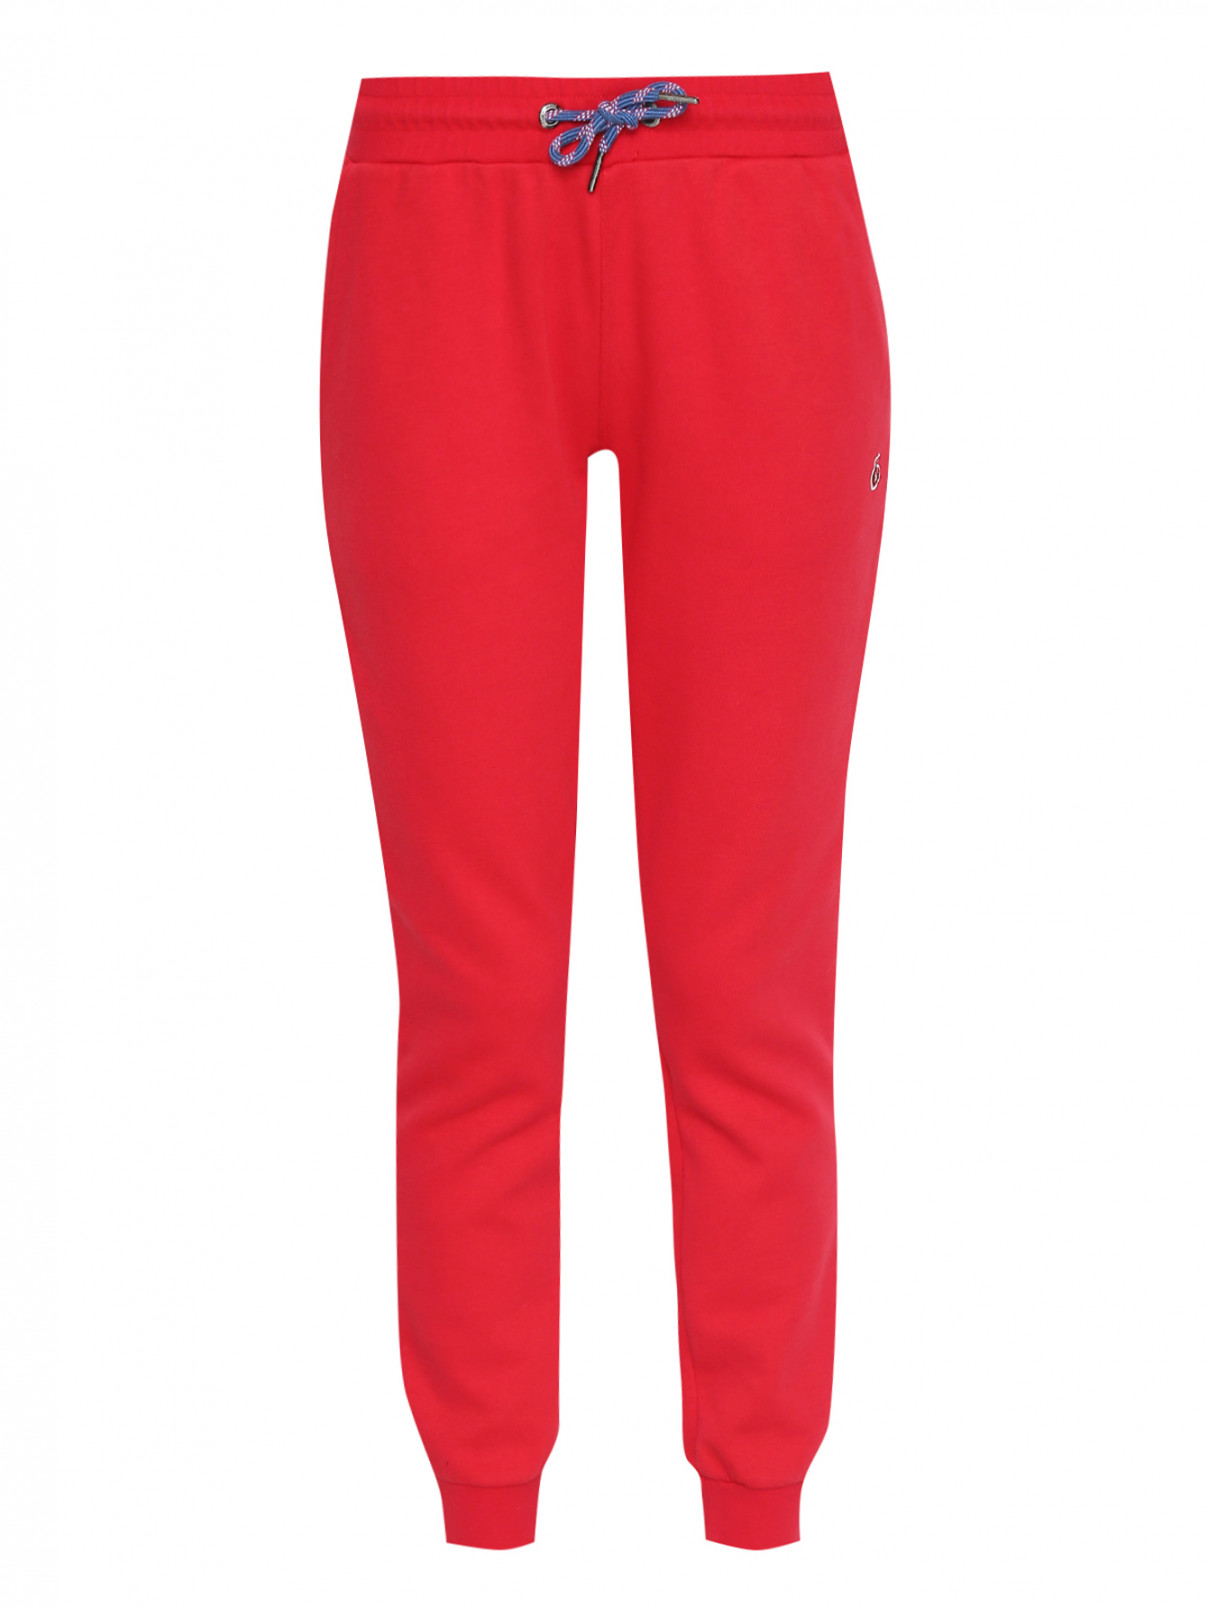 Спортивные брюки из хлопка на резинка BOSCO  –  Общий вид  – Цвет:  Красный